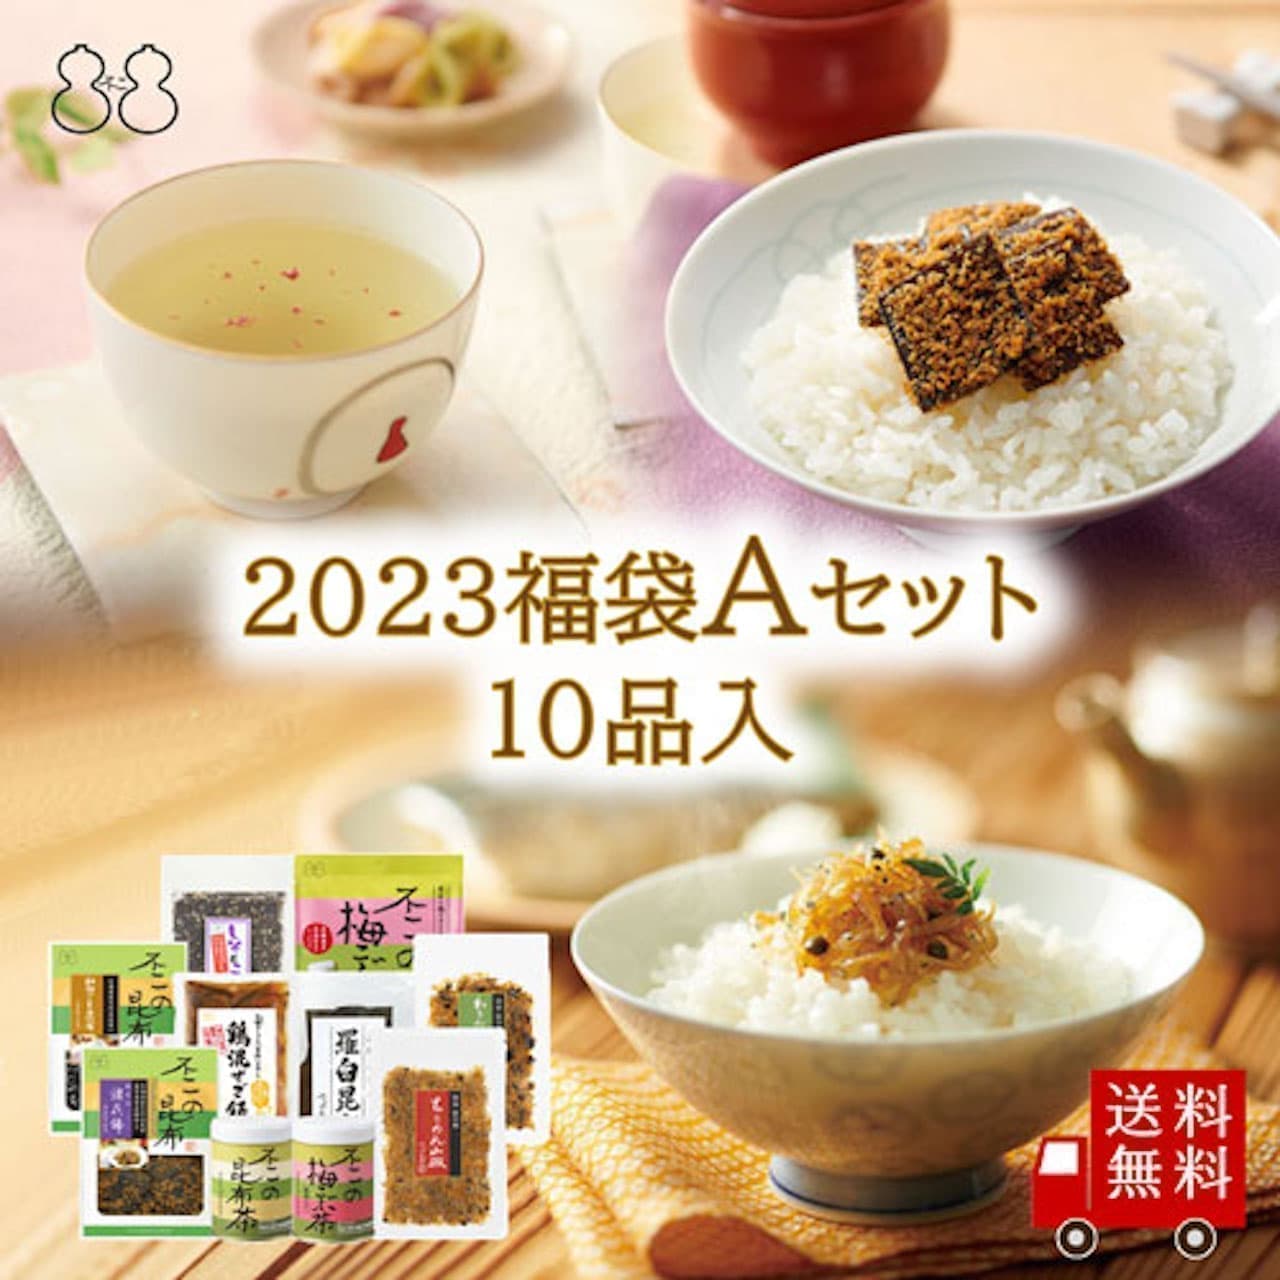 Fuji Foods Fukubukuro 2023